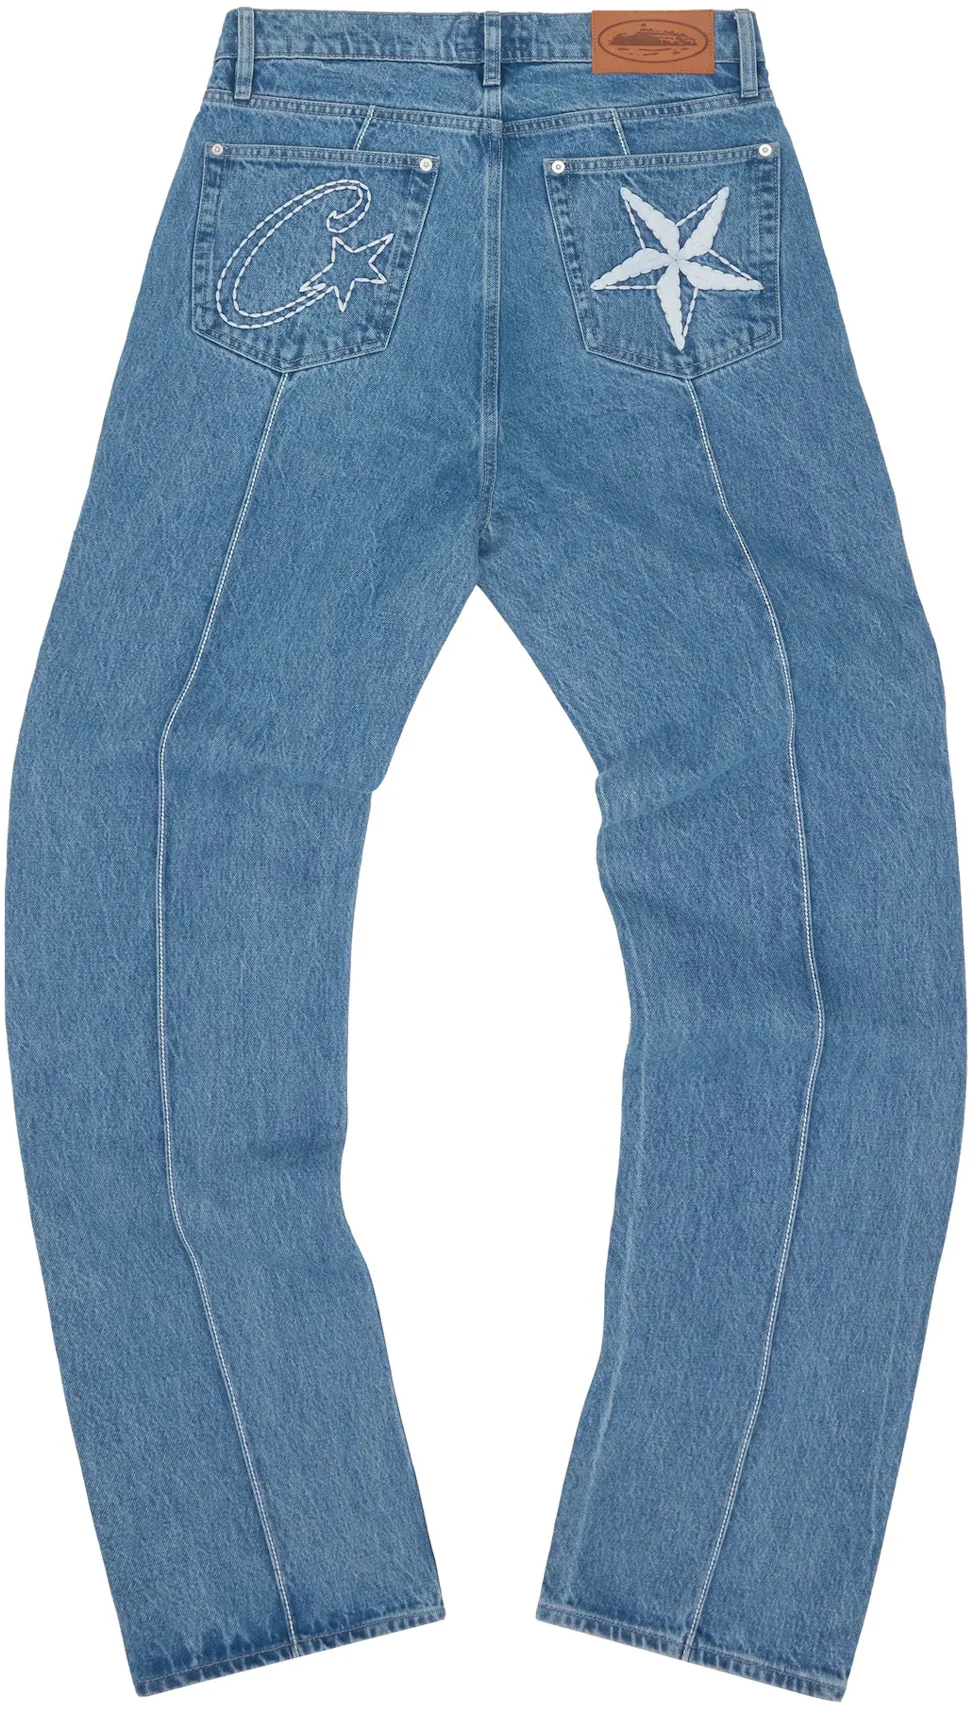 Corteiz C-Star Denim Jeans Blue Men's - SS23 - US